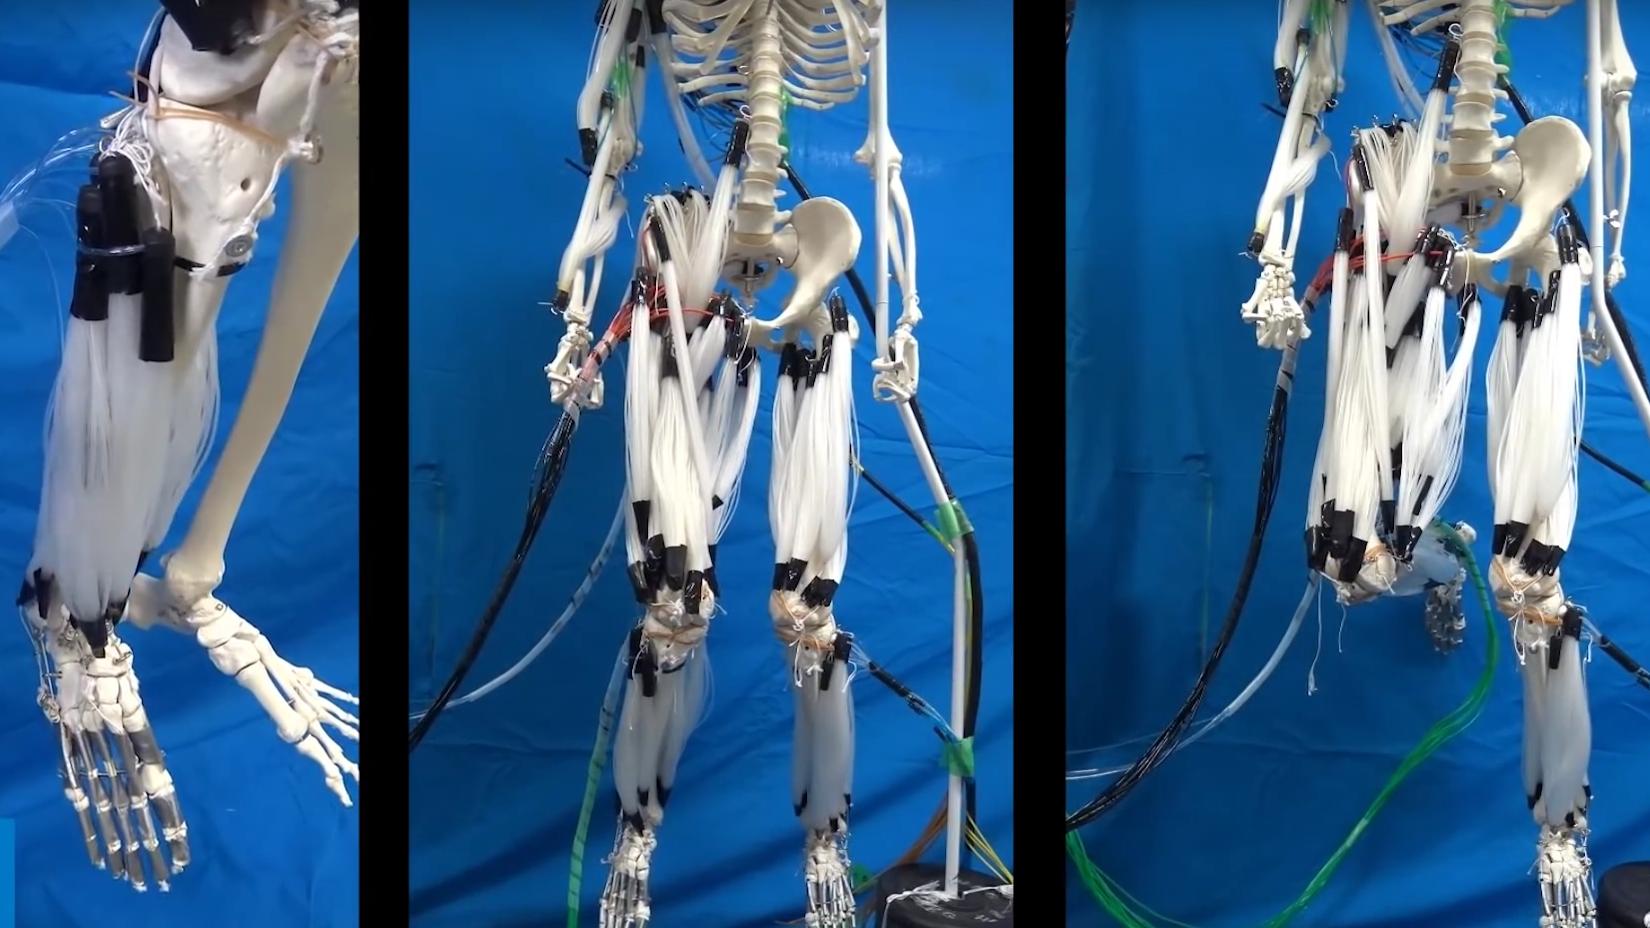 Denne roboten har muskler som fungerer på samme måte som hos mennesker